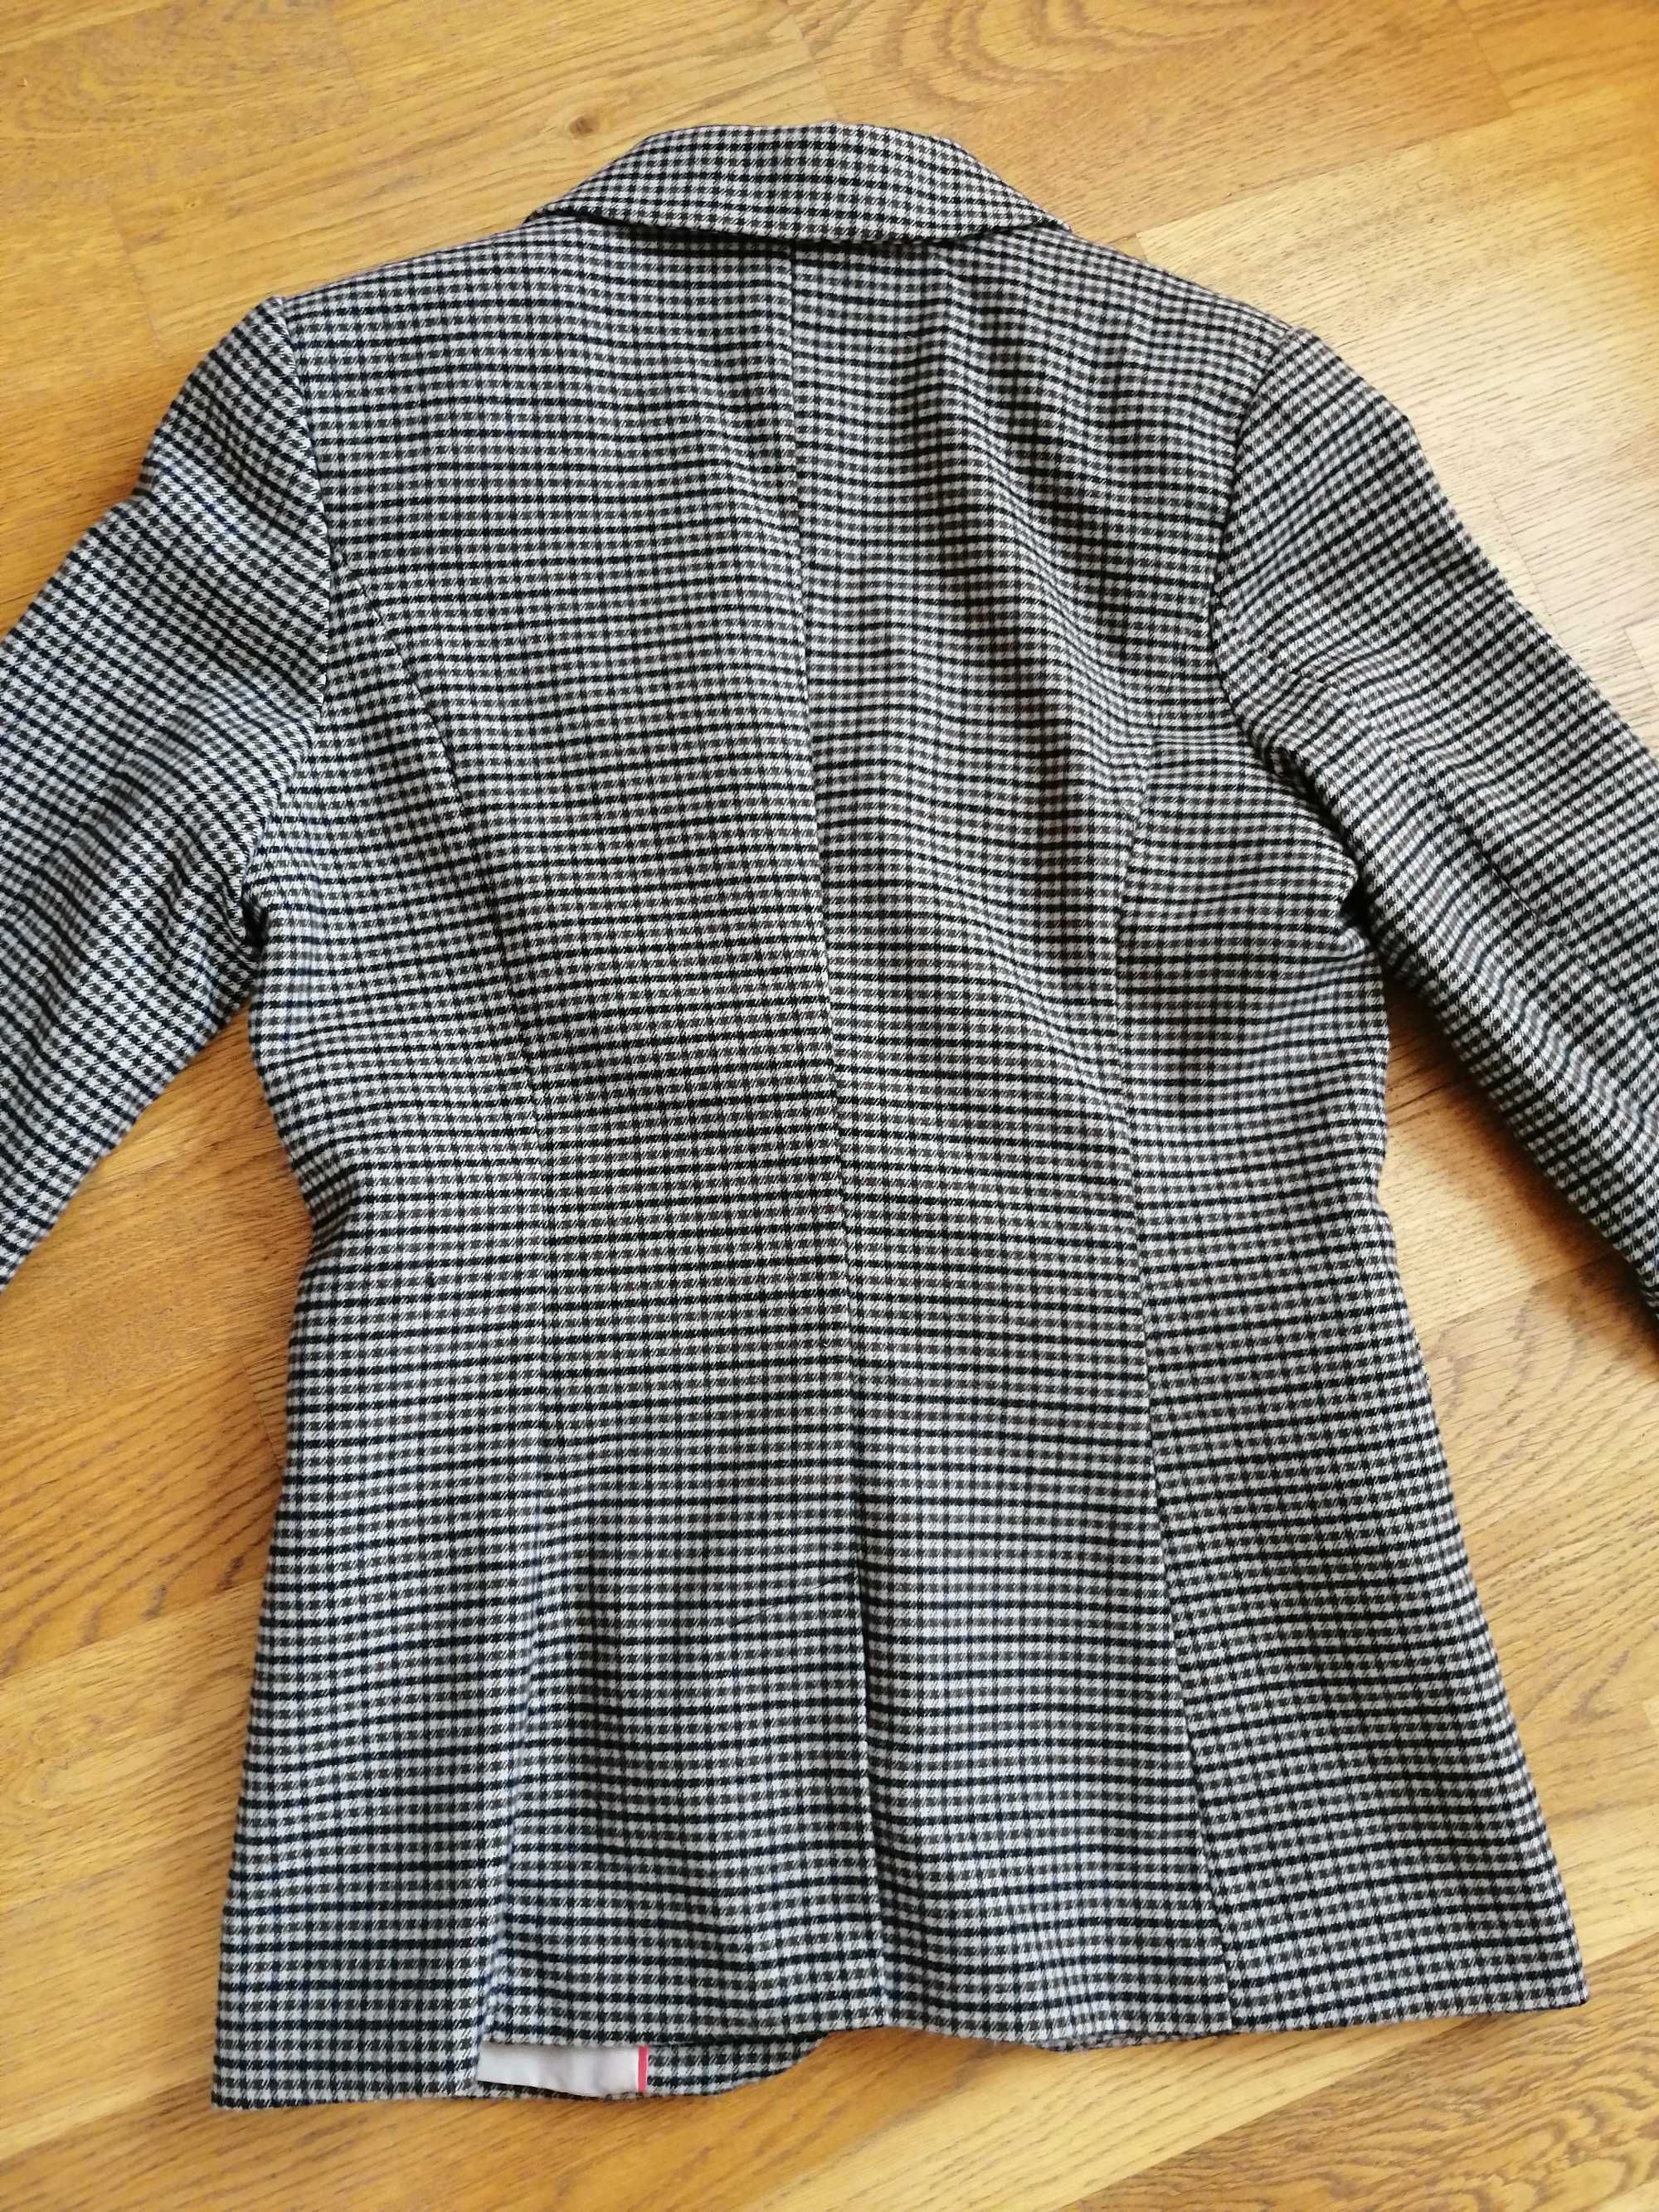 H&M żakiet marynarka w kratę kratkę tweedowa roz. 34